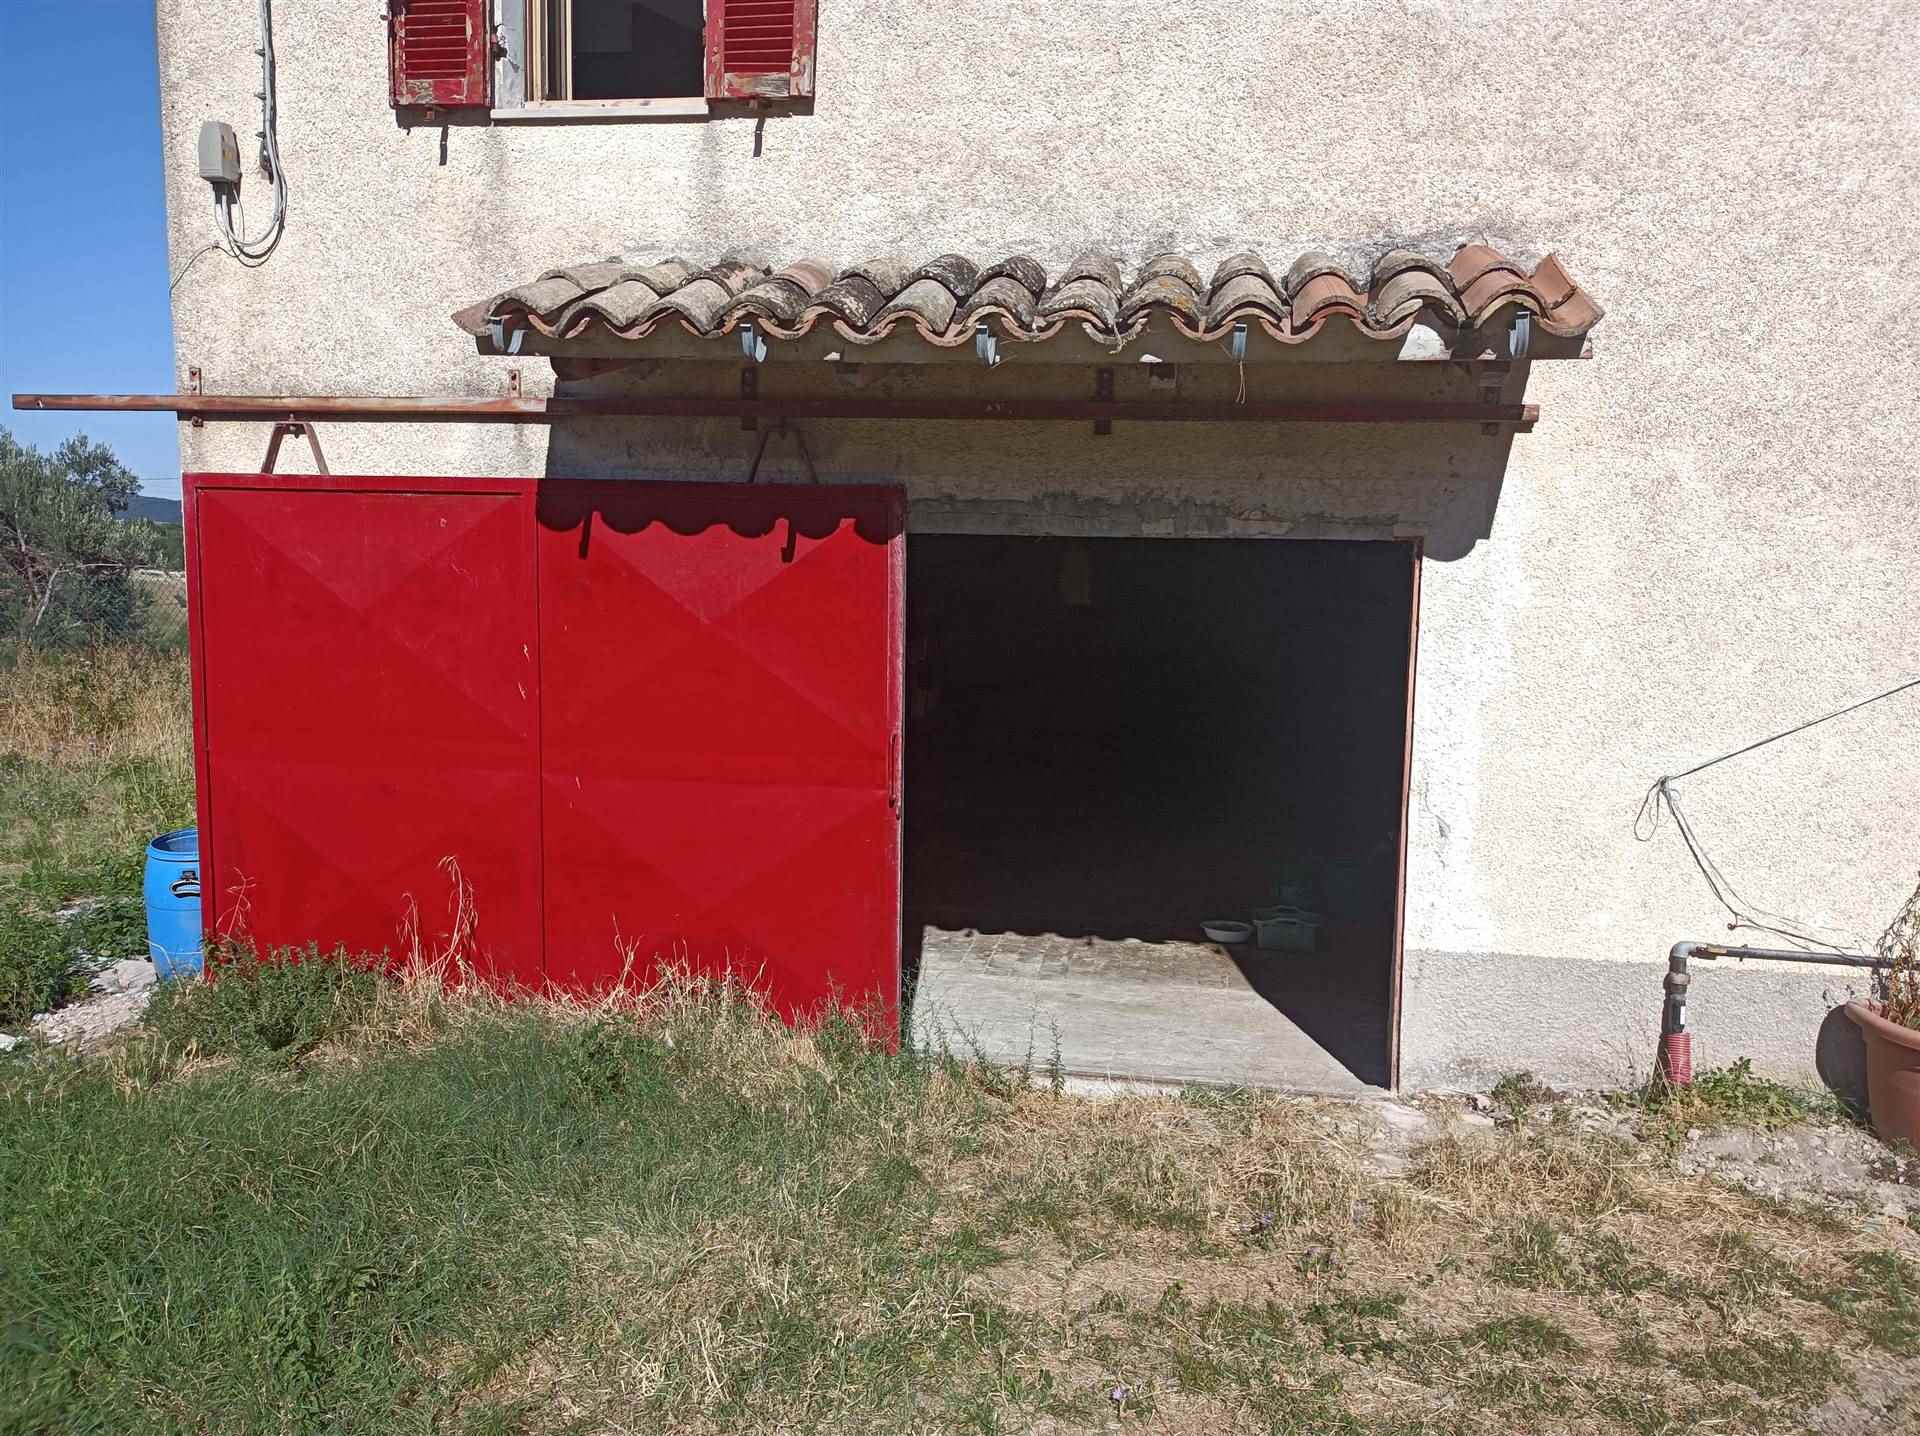 House for sale in San Severino Marche, MarcheF_693830 ima38451-F_693830.